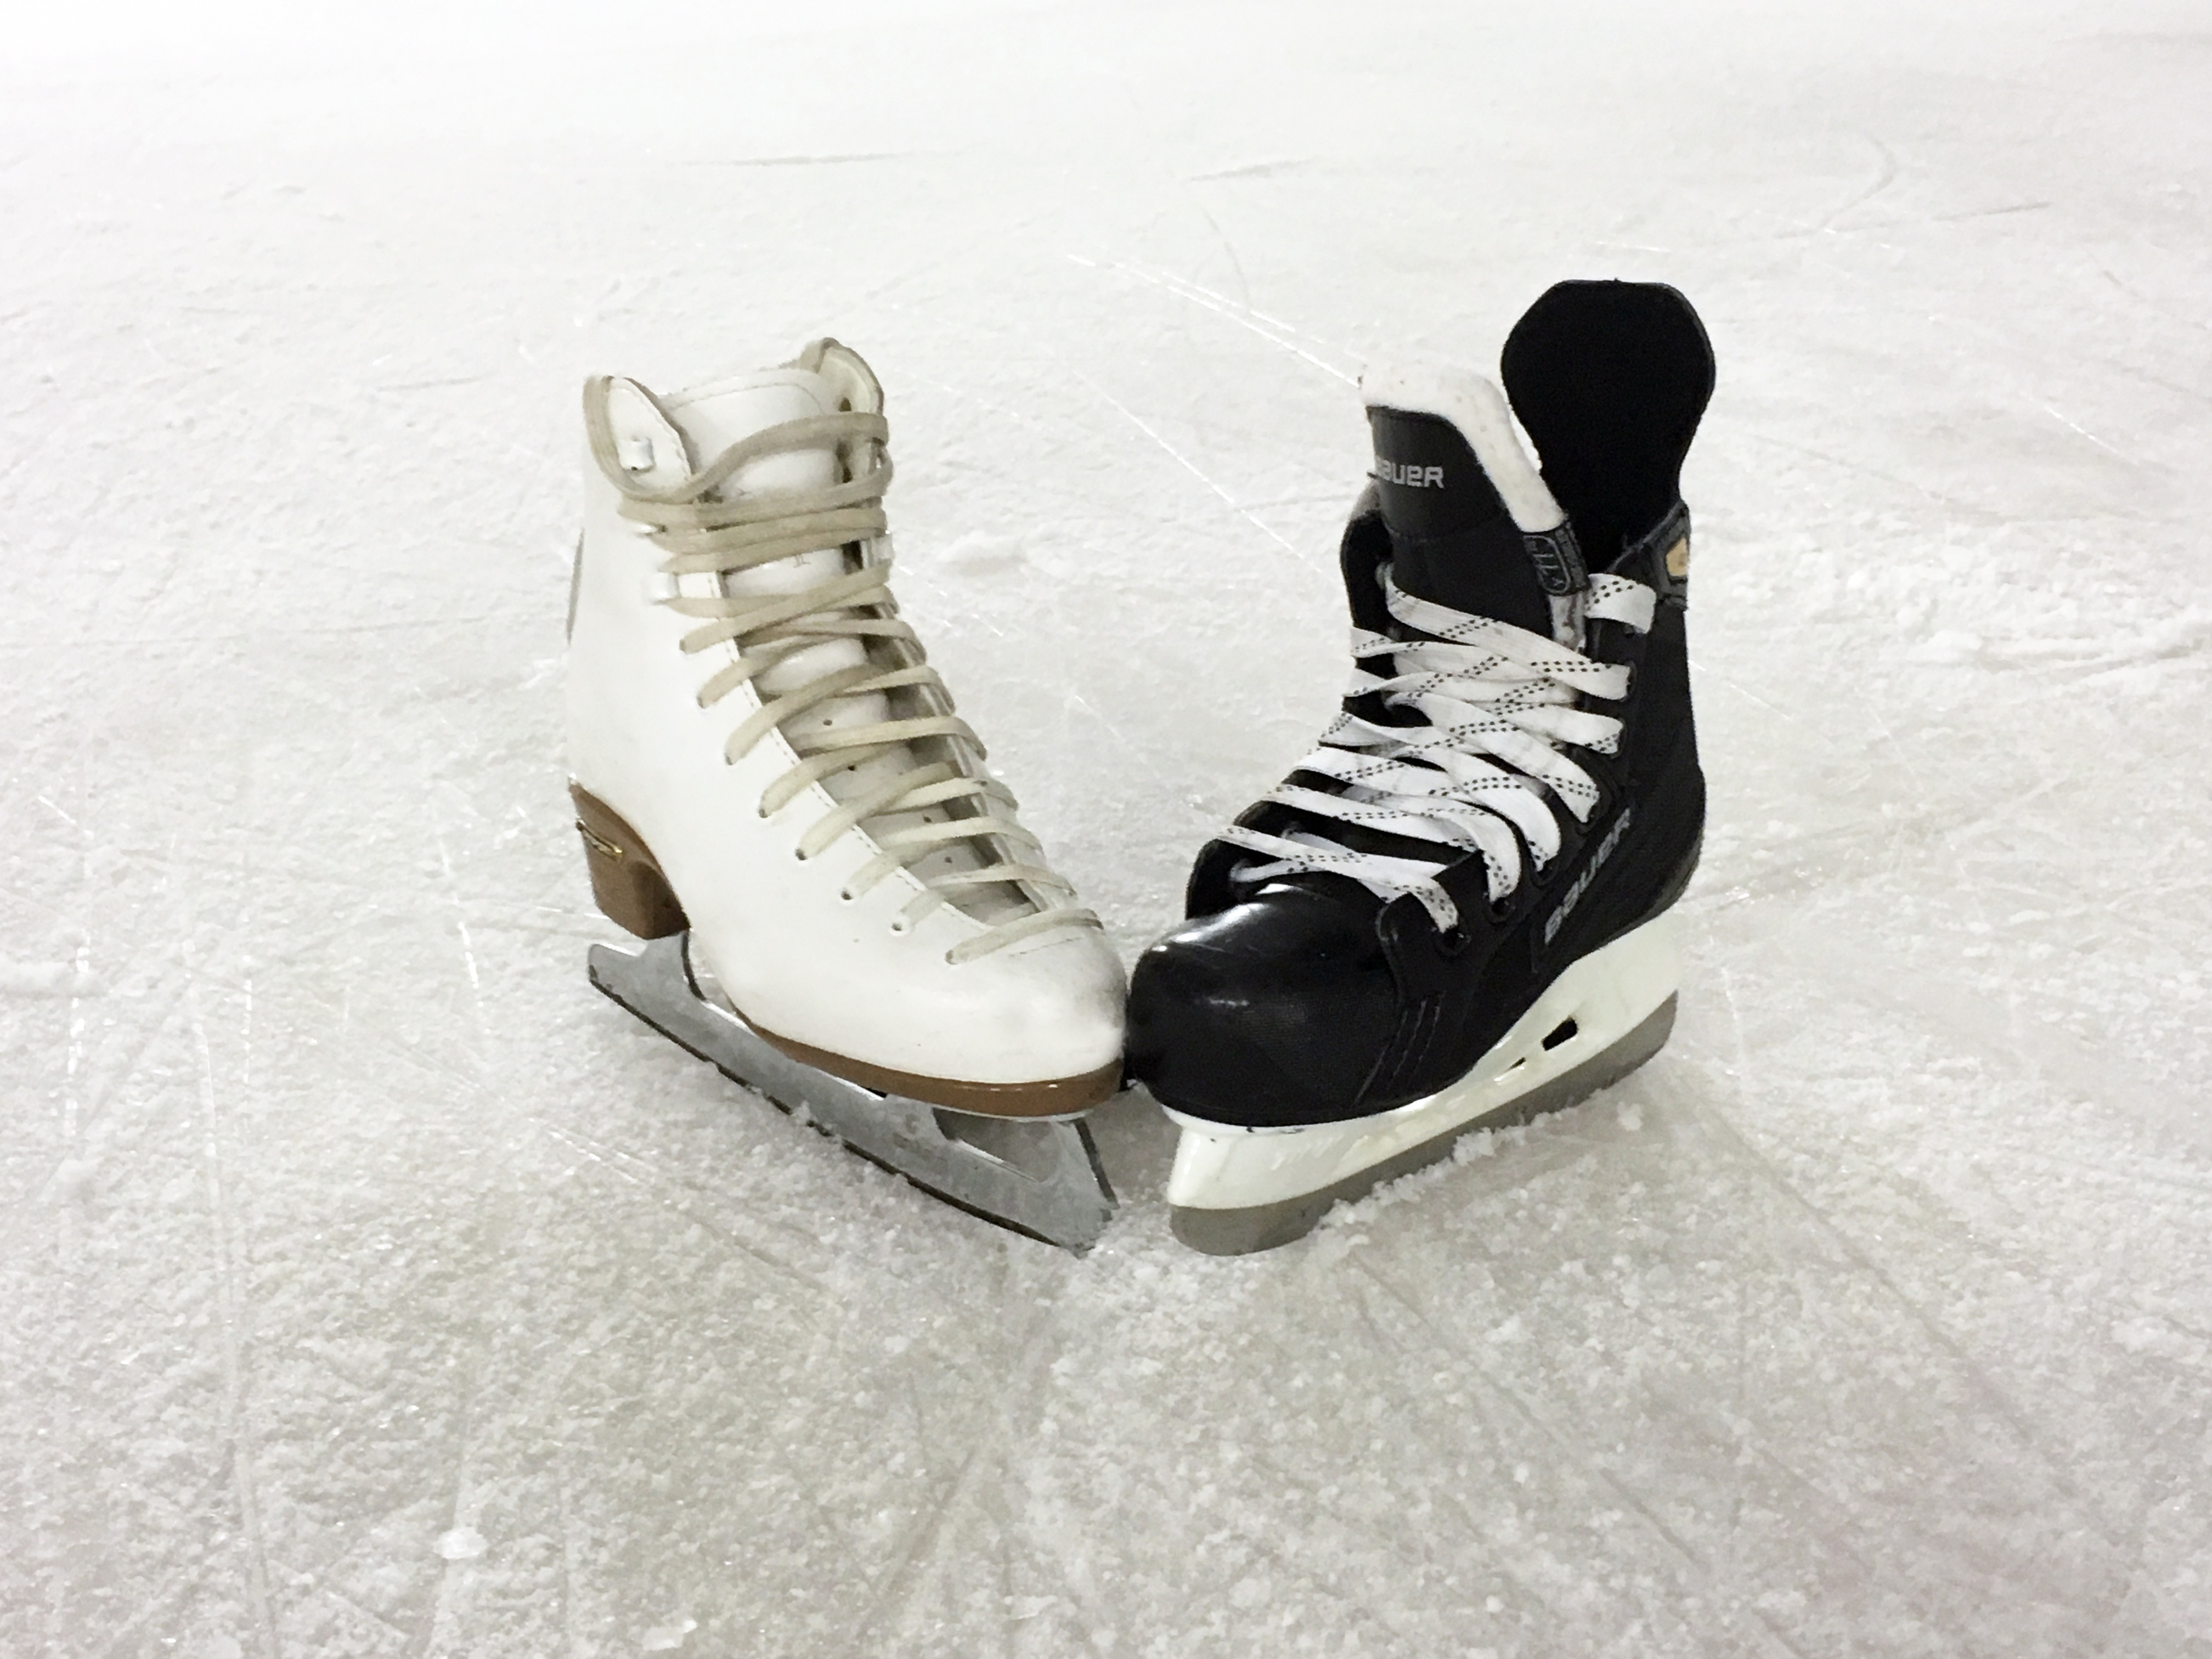 ice-skating-1215114 (1)